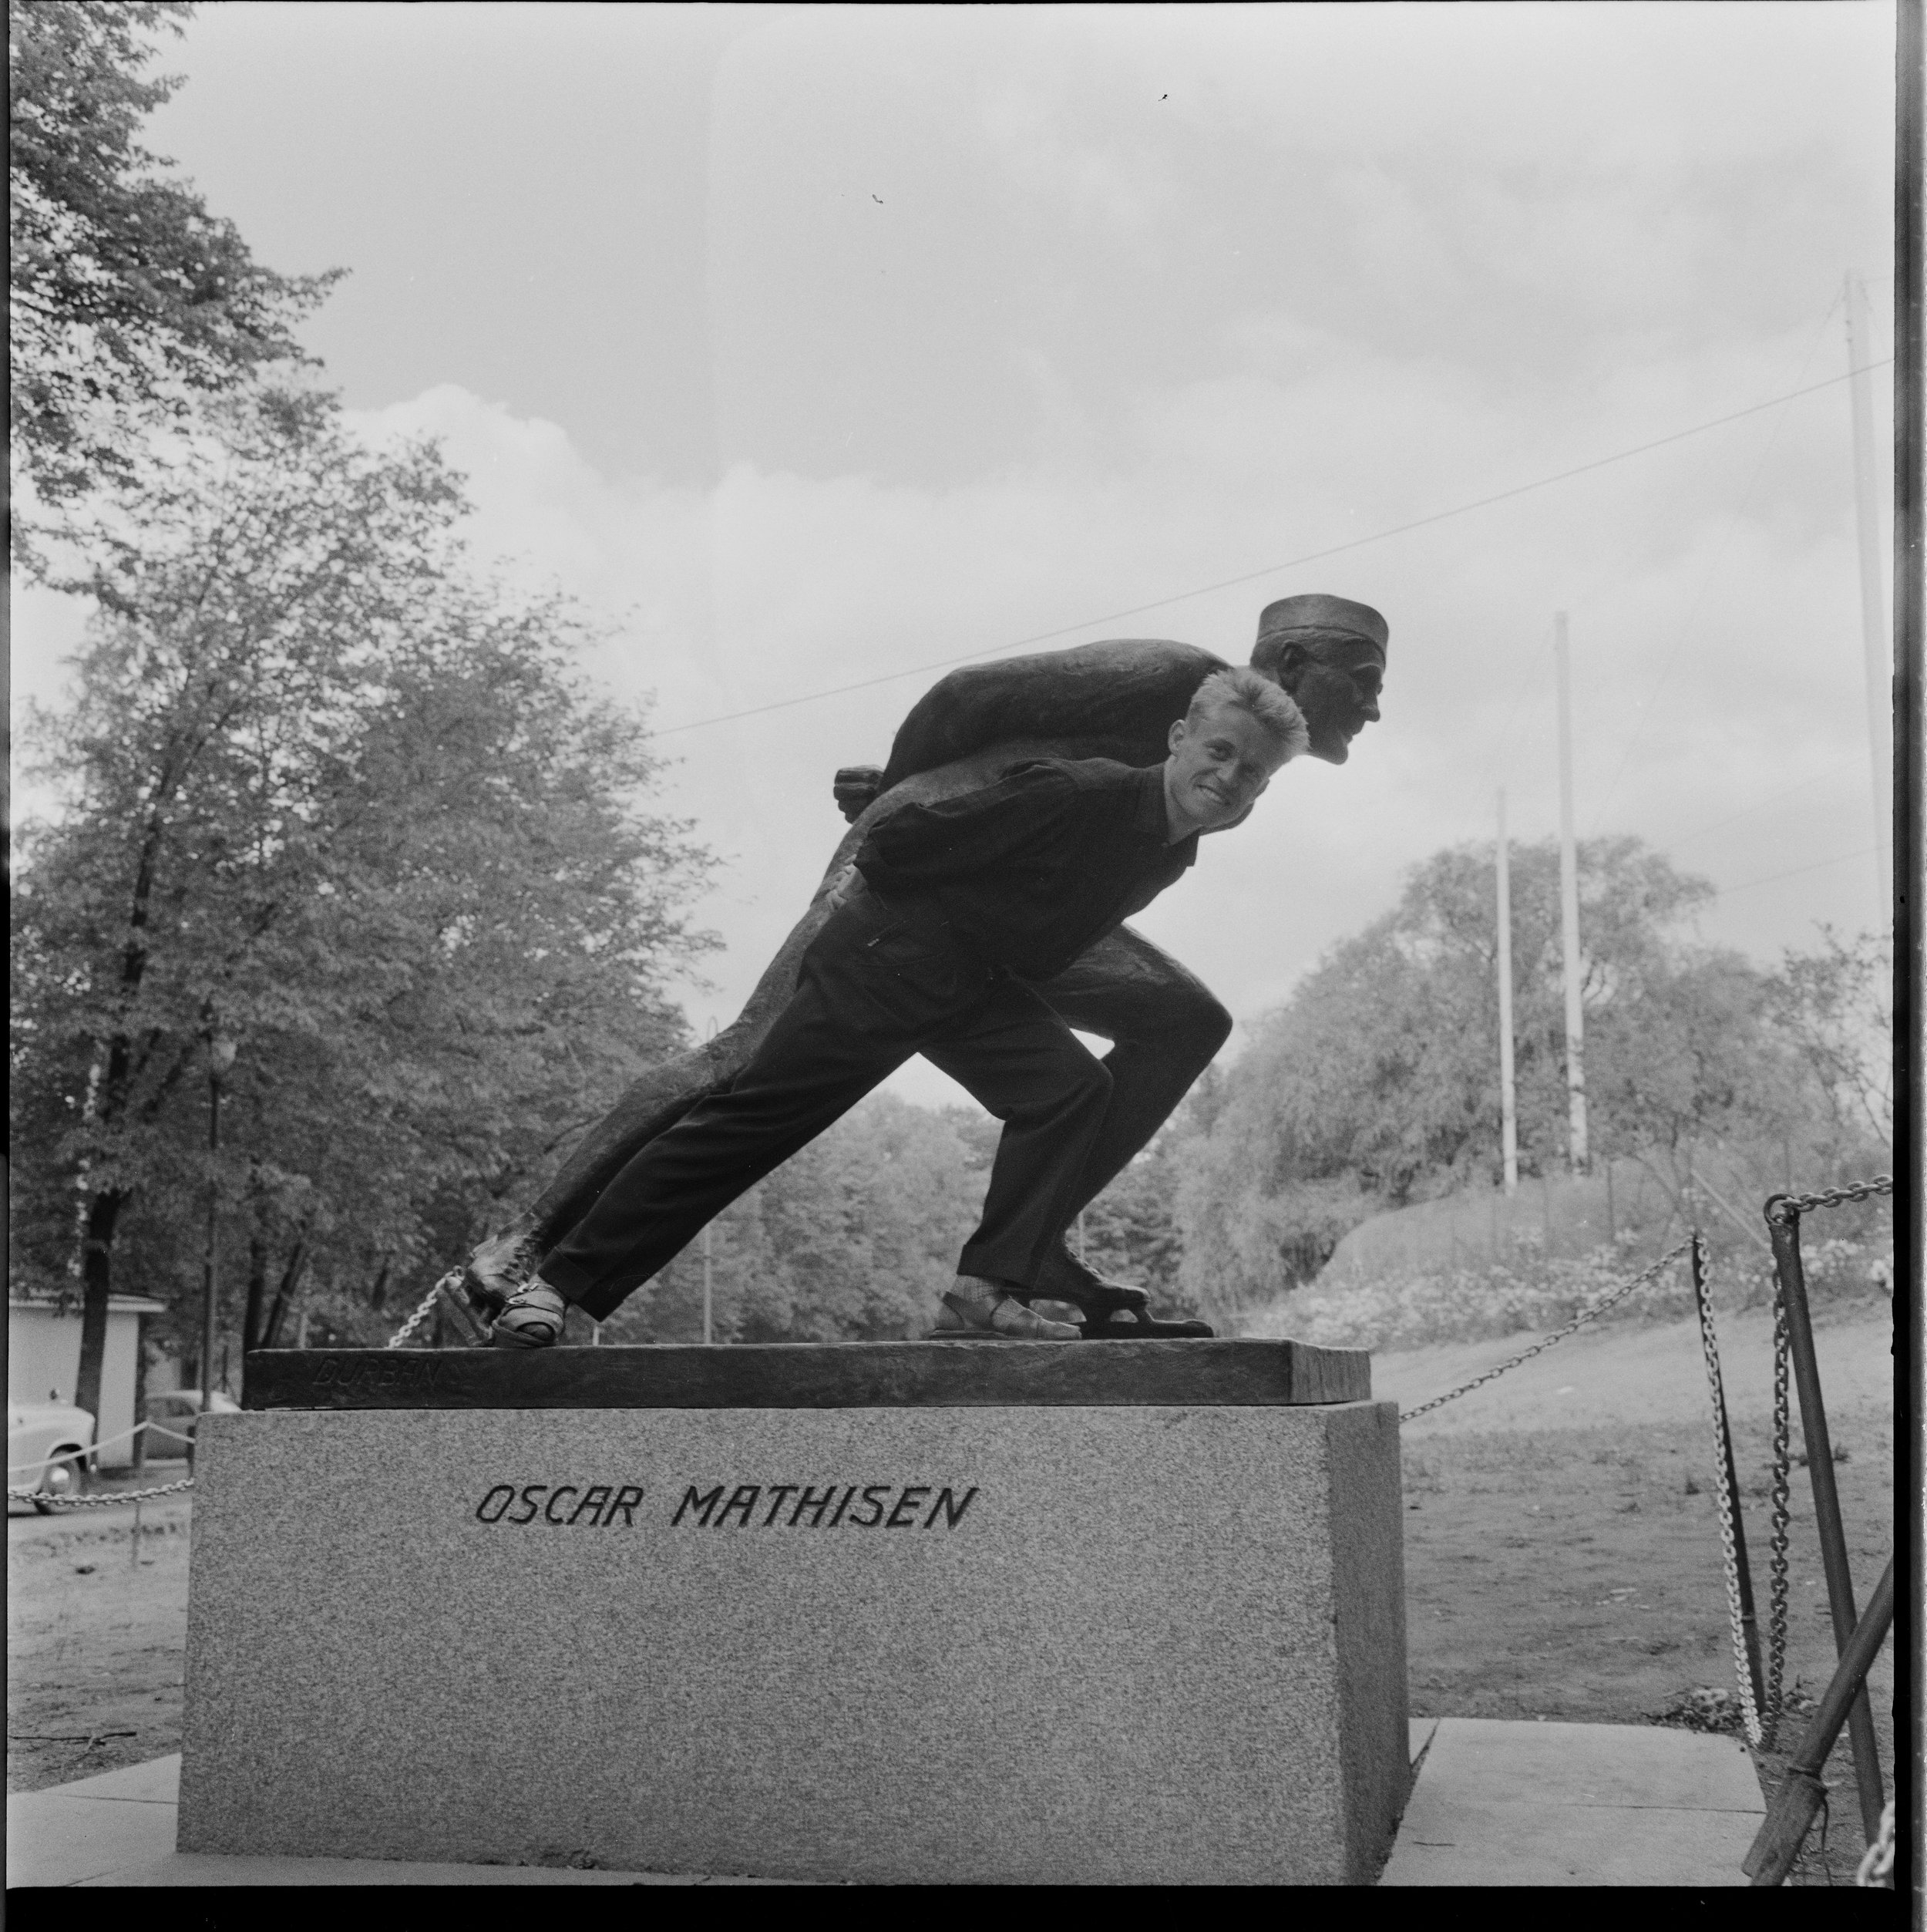 TO SKØYTEKONGER: Kurt etterligner statuen til skøytekongen Oscar Mathisen til en reportasje gjort i 1959 av Billedbladet Nå.